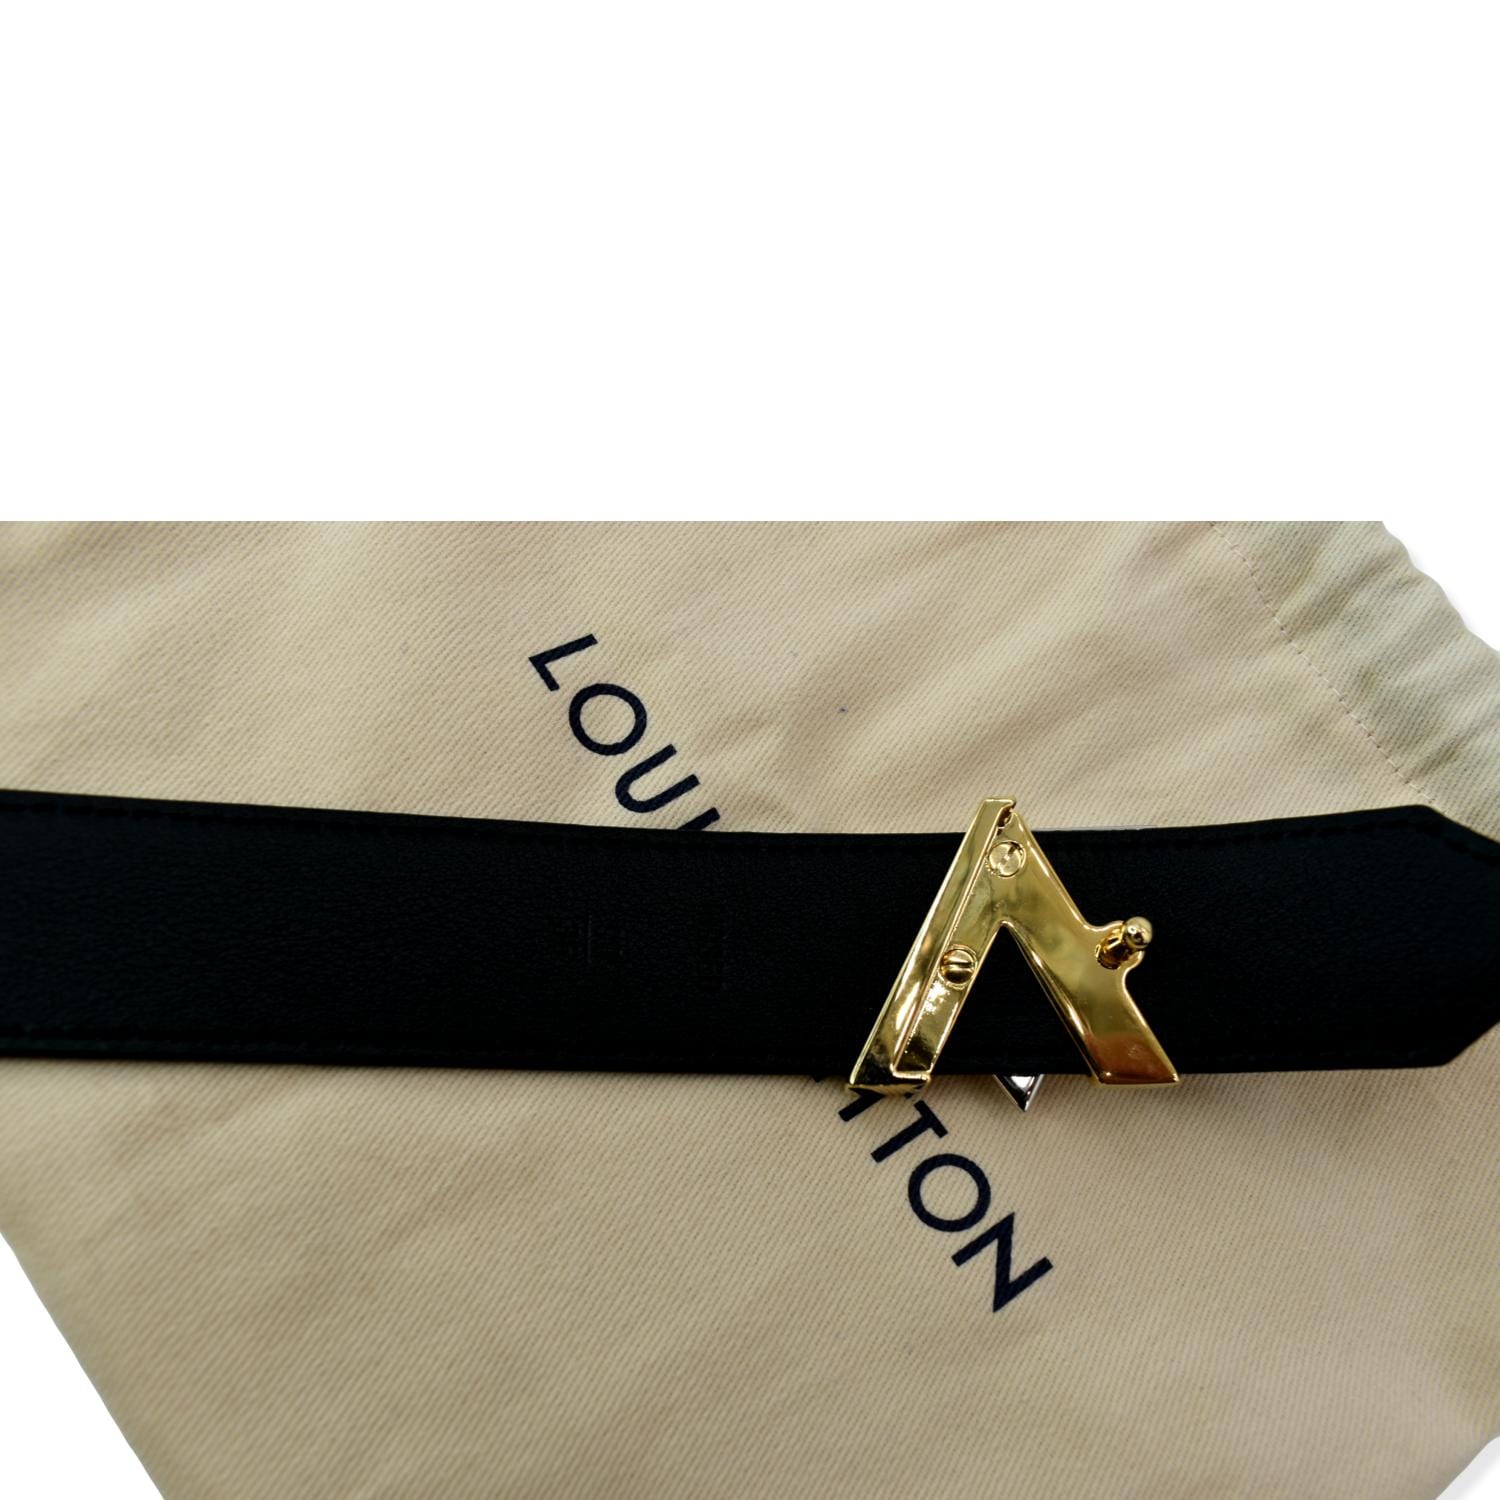 Wear It's At - Drop dead gorgeous Louis Vuitton Twist Belt